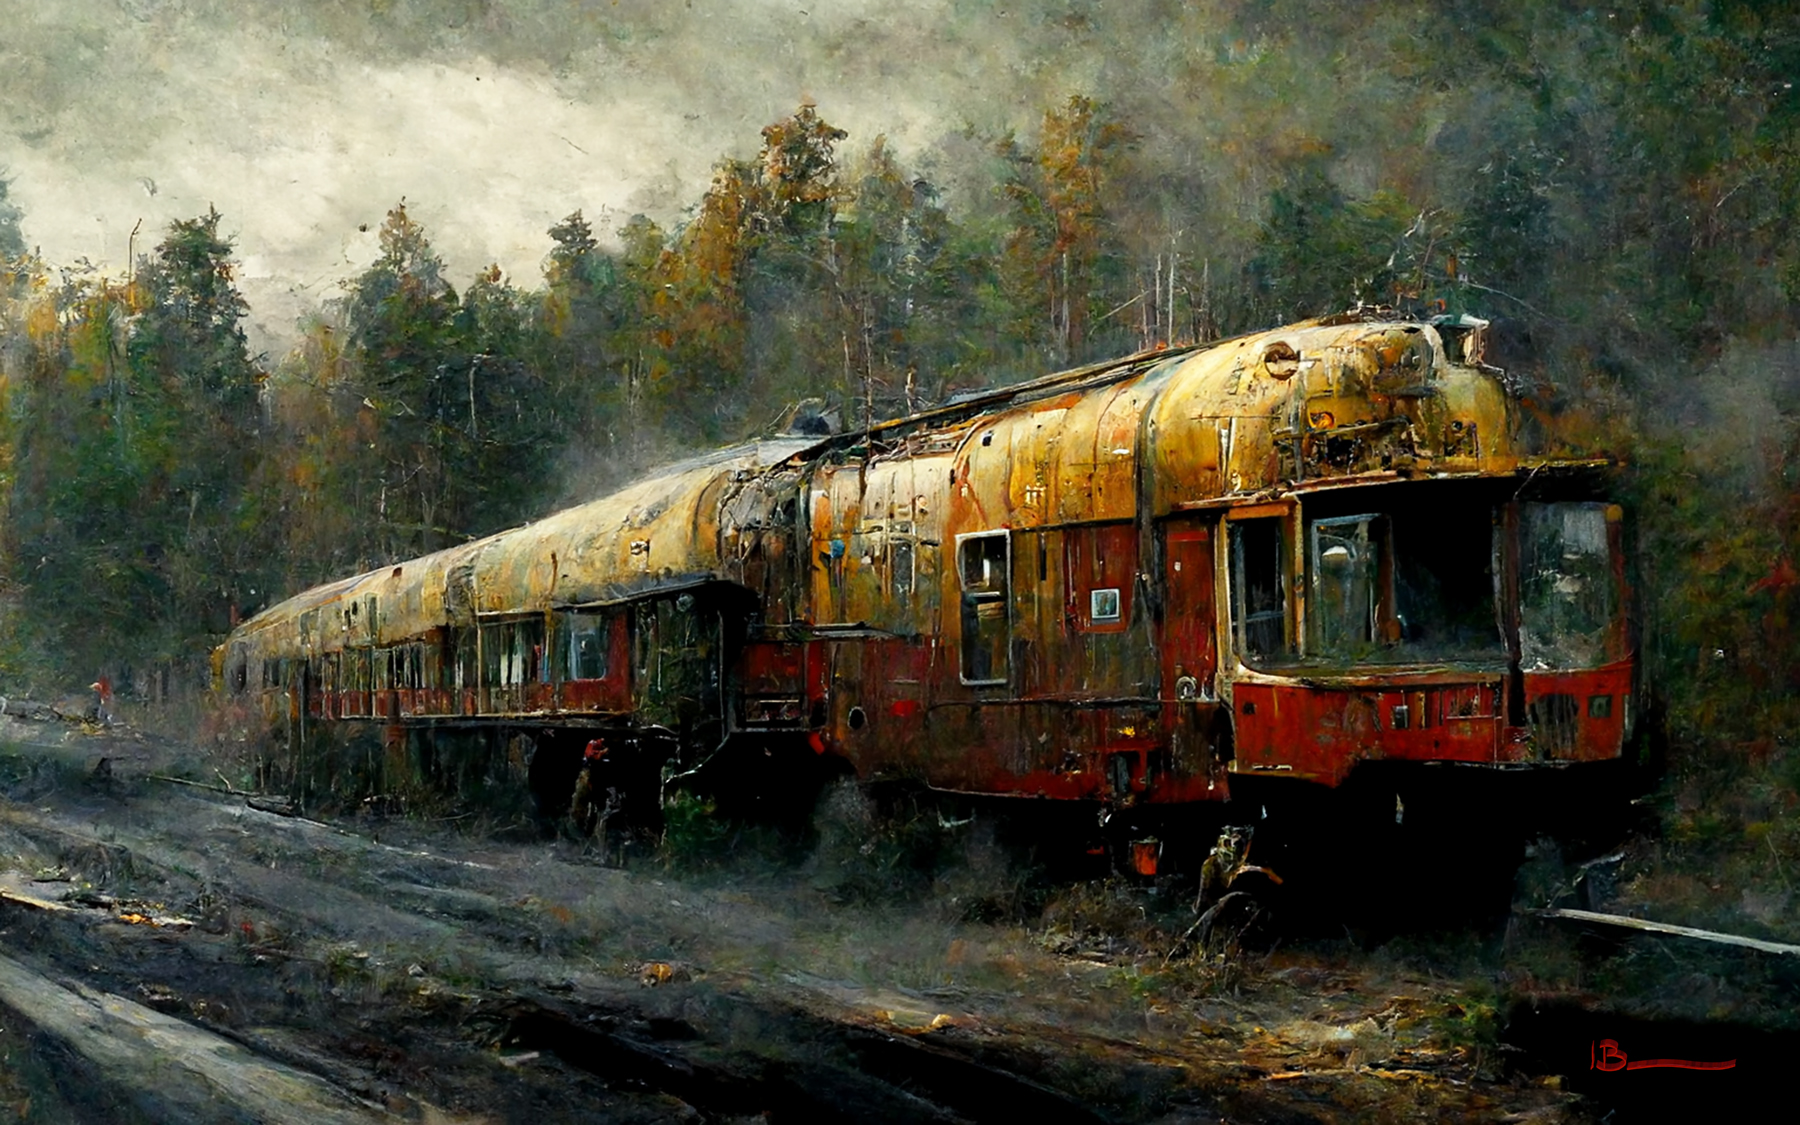 Railwaying